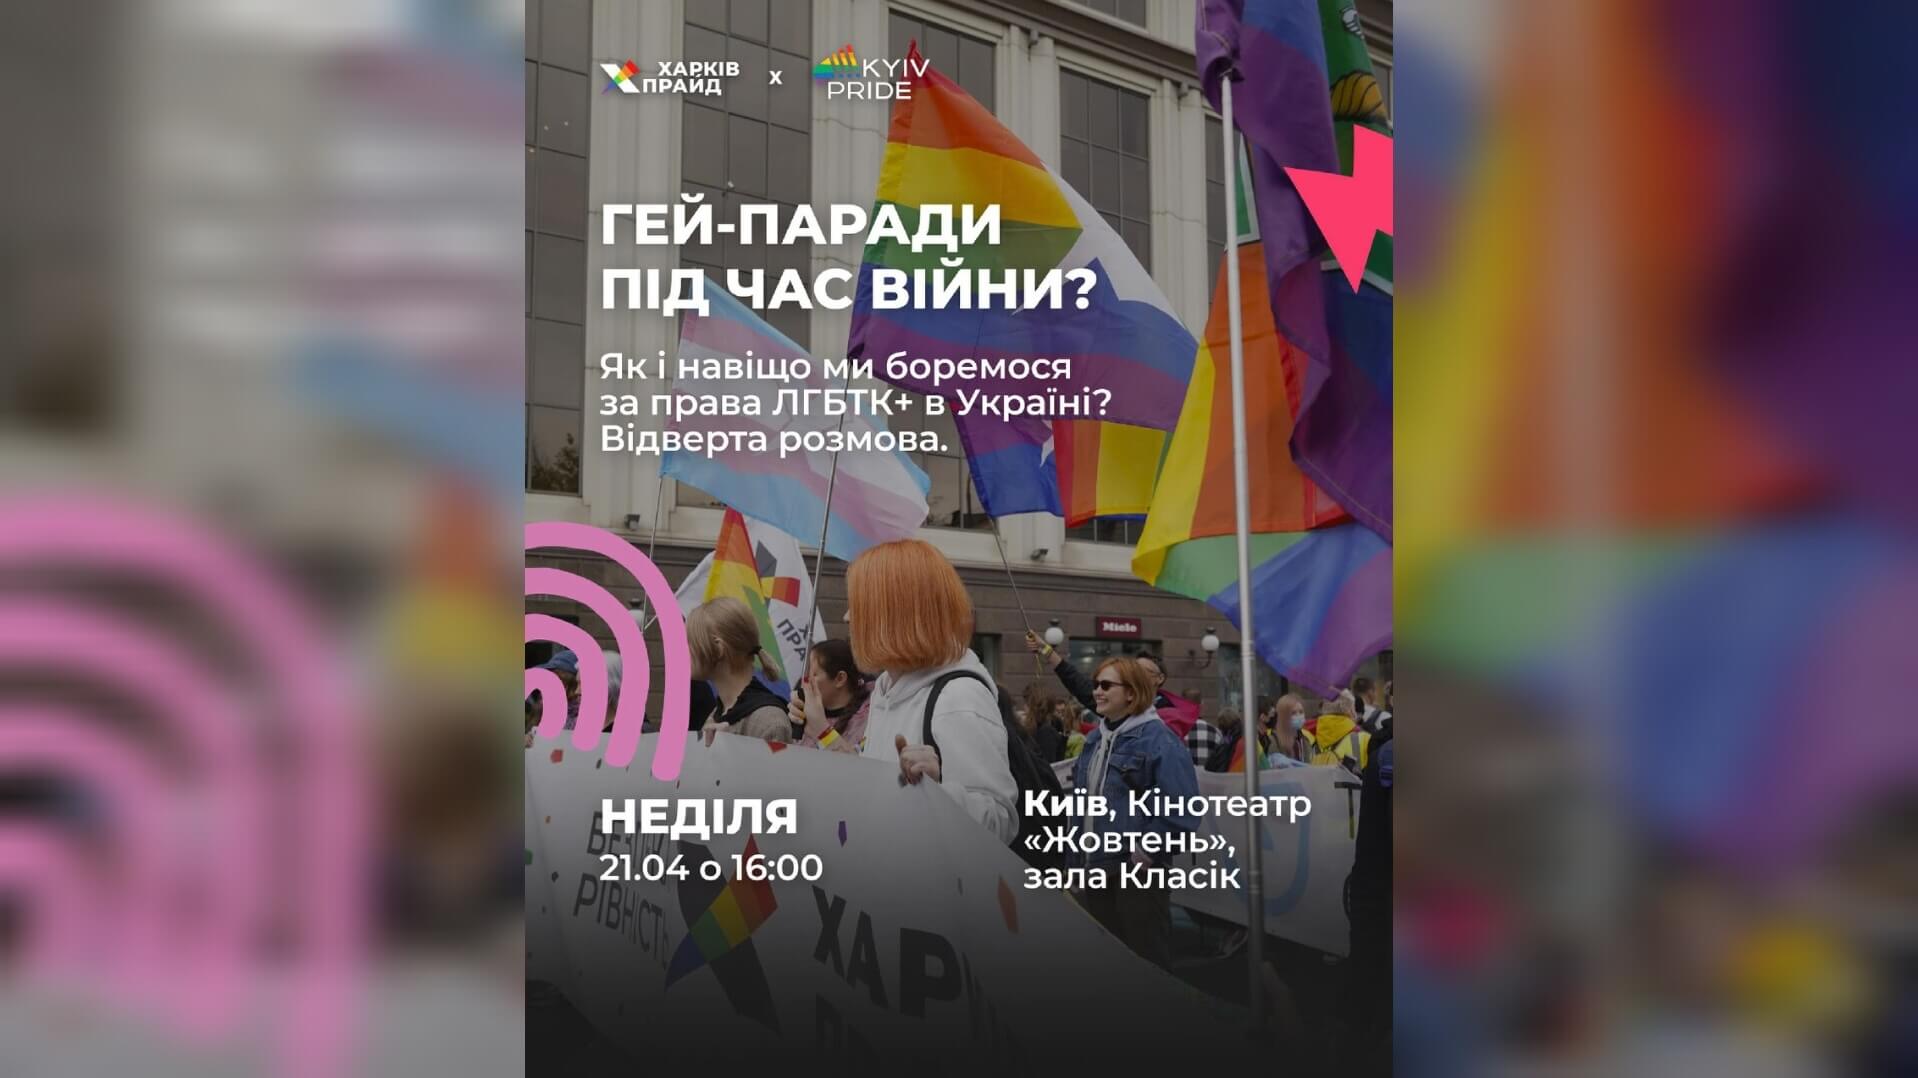 ХарківПрайд анонсує офлайн дискусію Гей-паради під час війни? Як і навіщо ми боремося за права ЛҐБТКІА+ в Україні